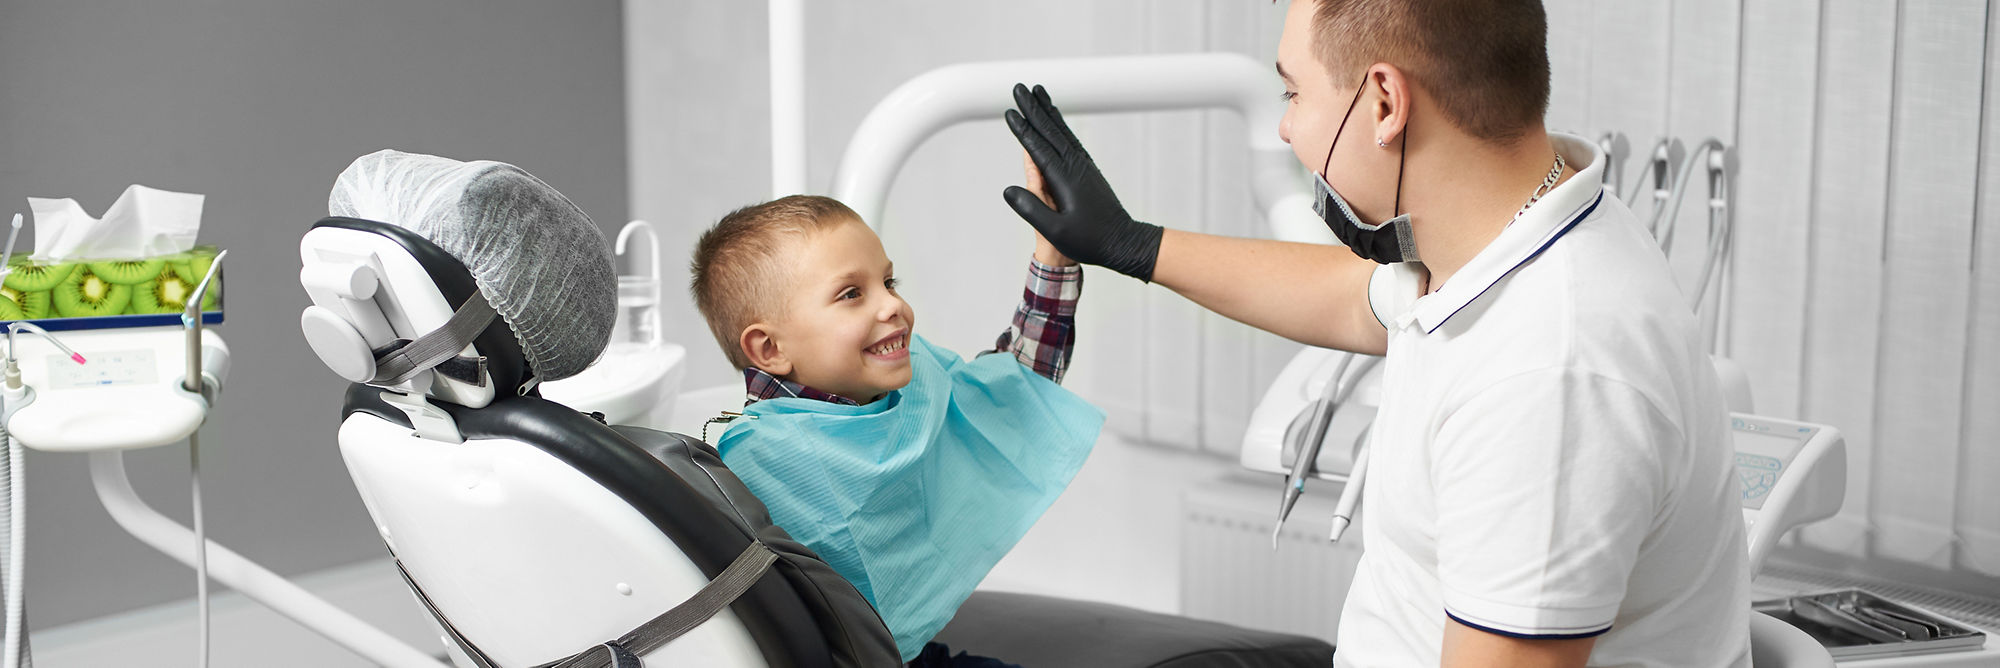 Dziecko jest szczęśliwe po zabiegu stomatologicznym i daje piątkę swojemu lekarzowi w nowoczesnej klinice stomatologicznej.